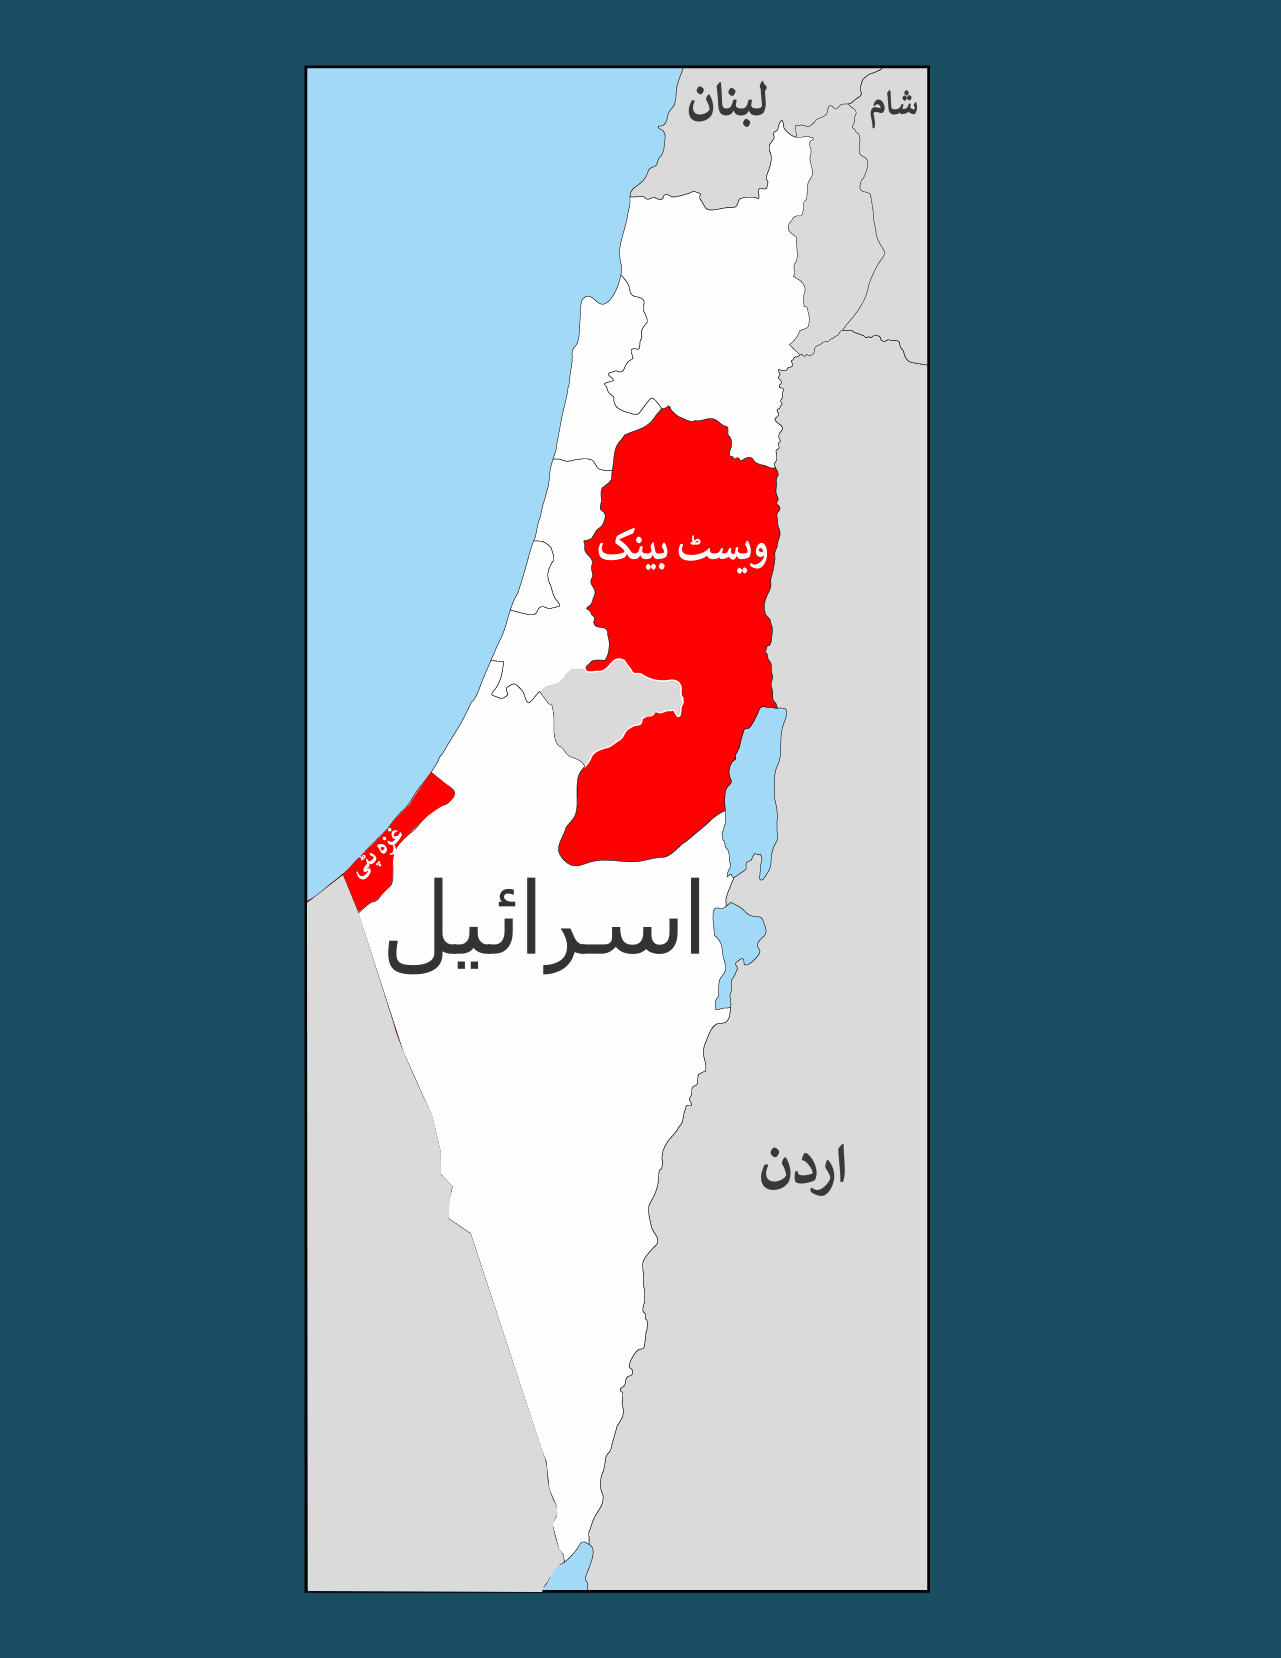 سرخ نقشے میں ویسٹ بینک اور غزی پٹی مسلمانوں کا اکثریتی علاقہ